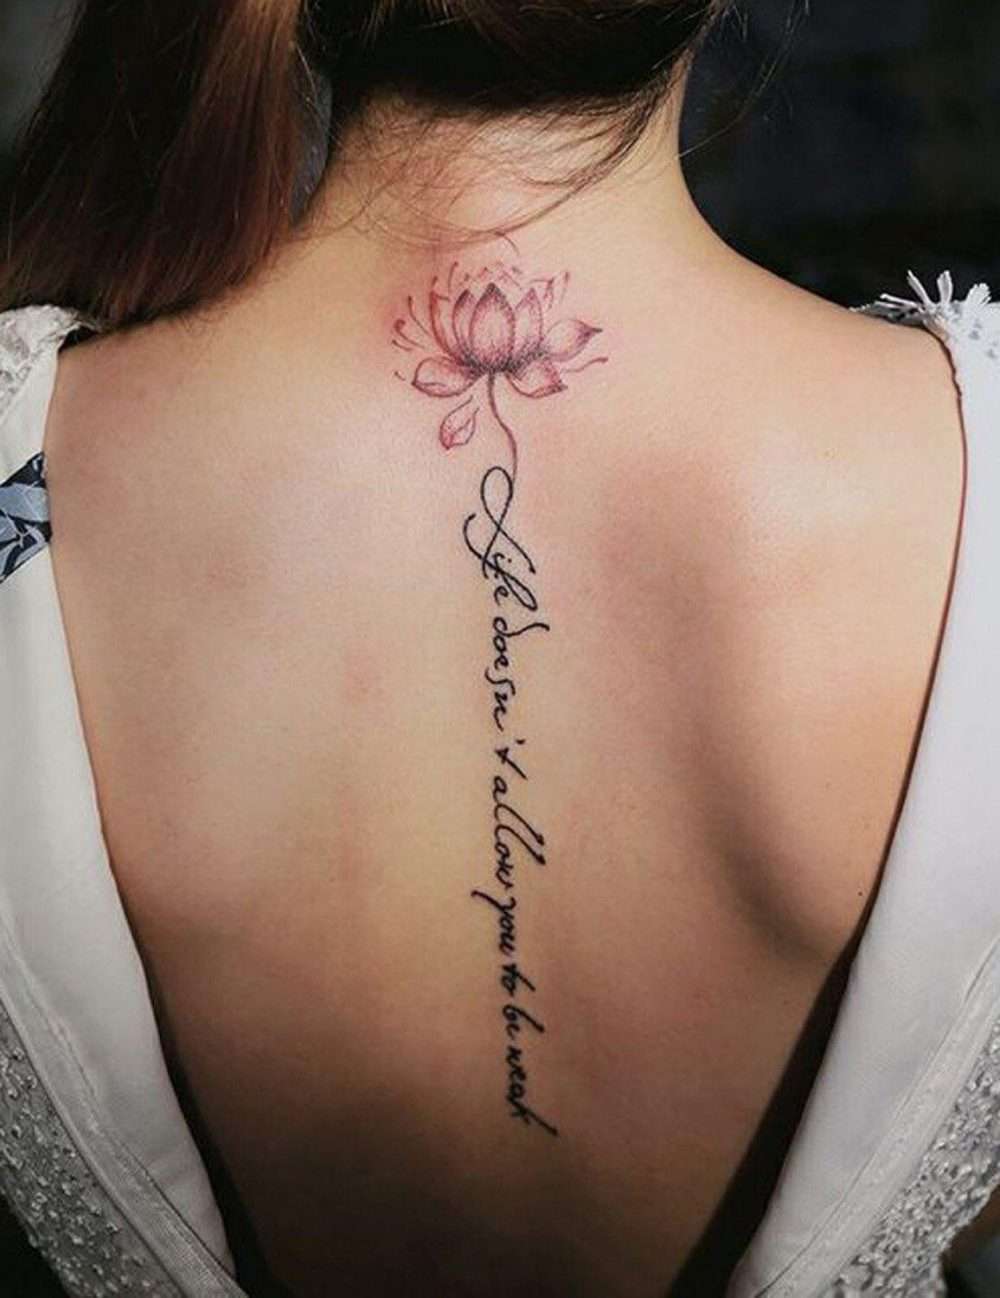 Tatuaje en la columna vertebral: flor de loto y frase